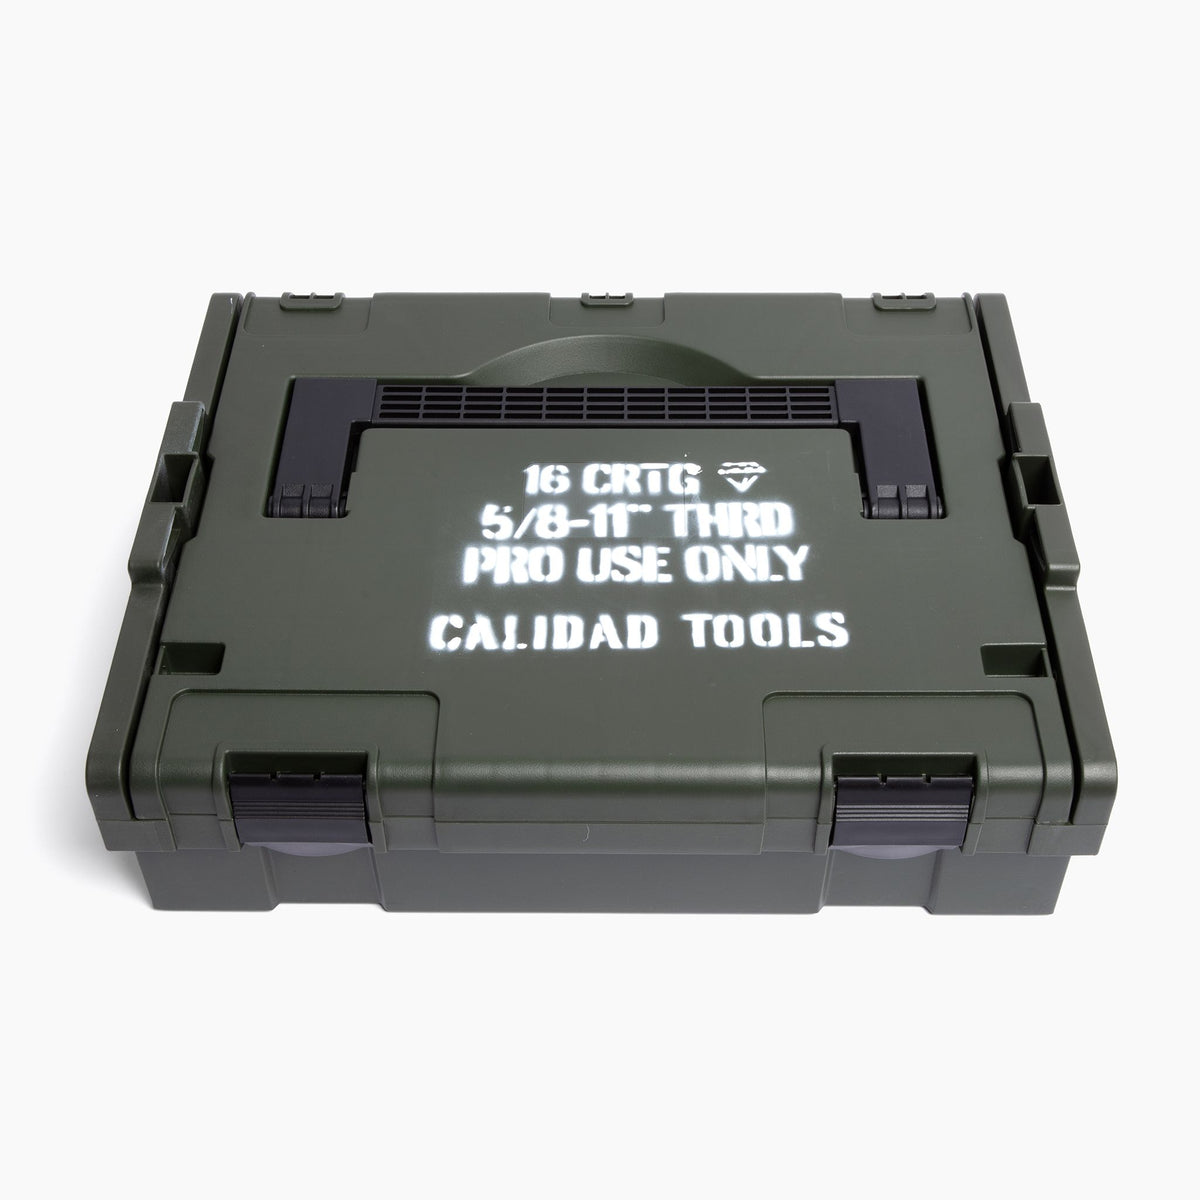 Calidad Ration Toolbox: A Set of 18+ Tiling Tools